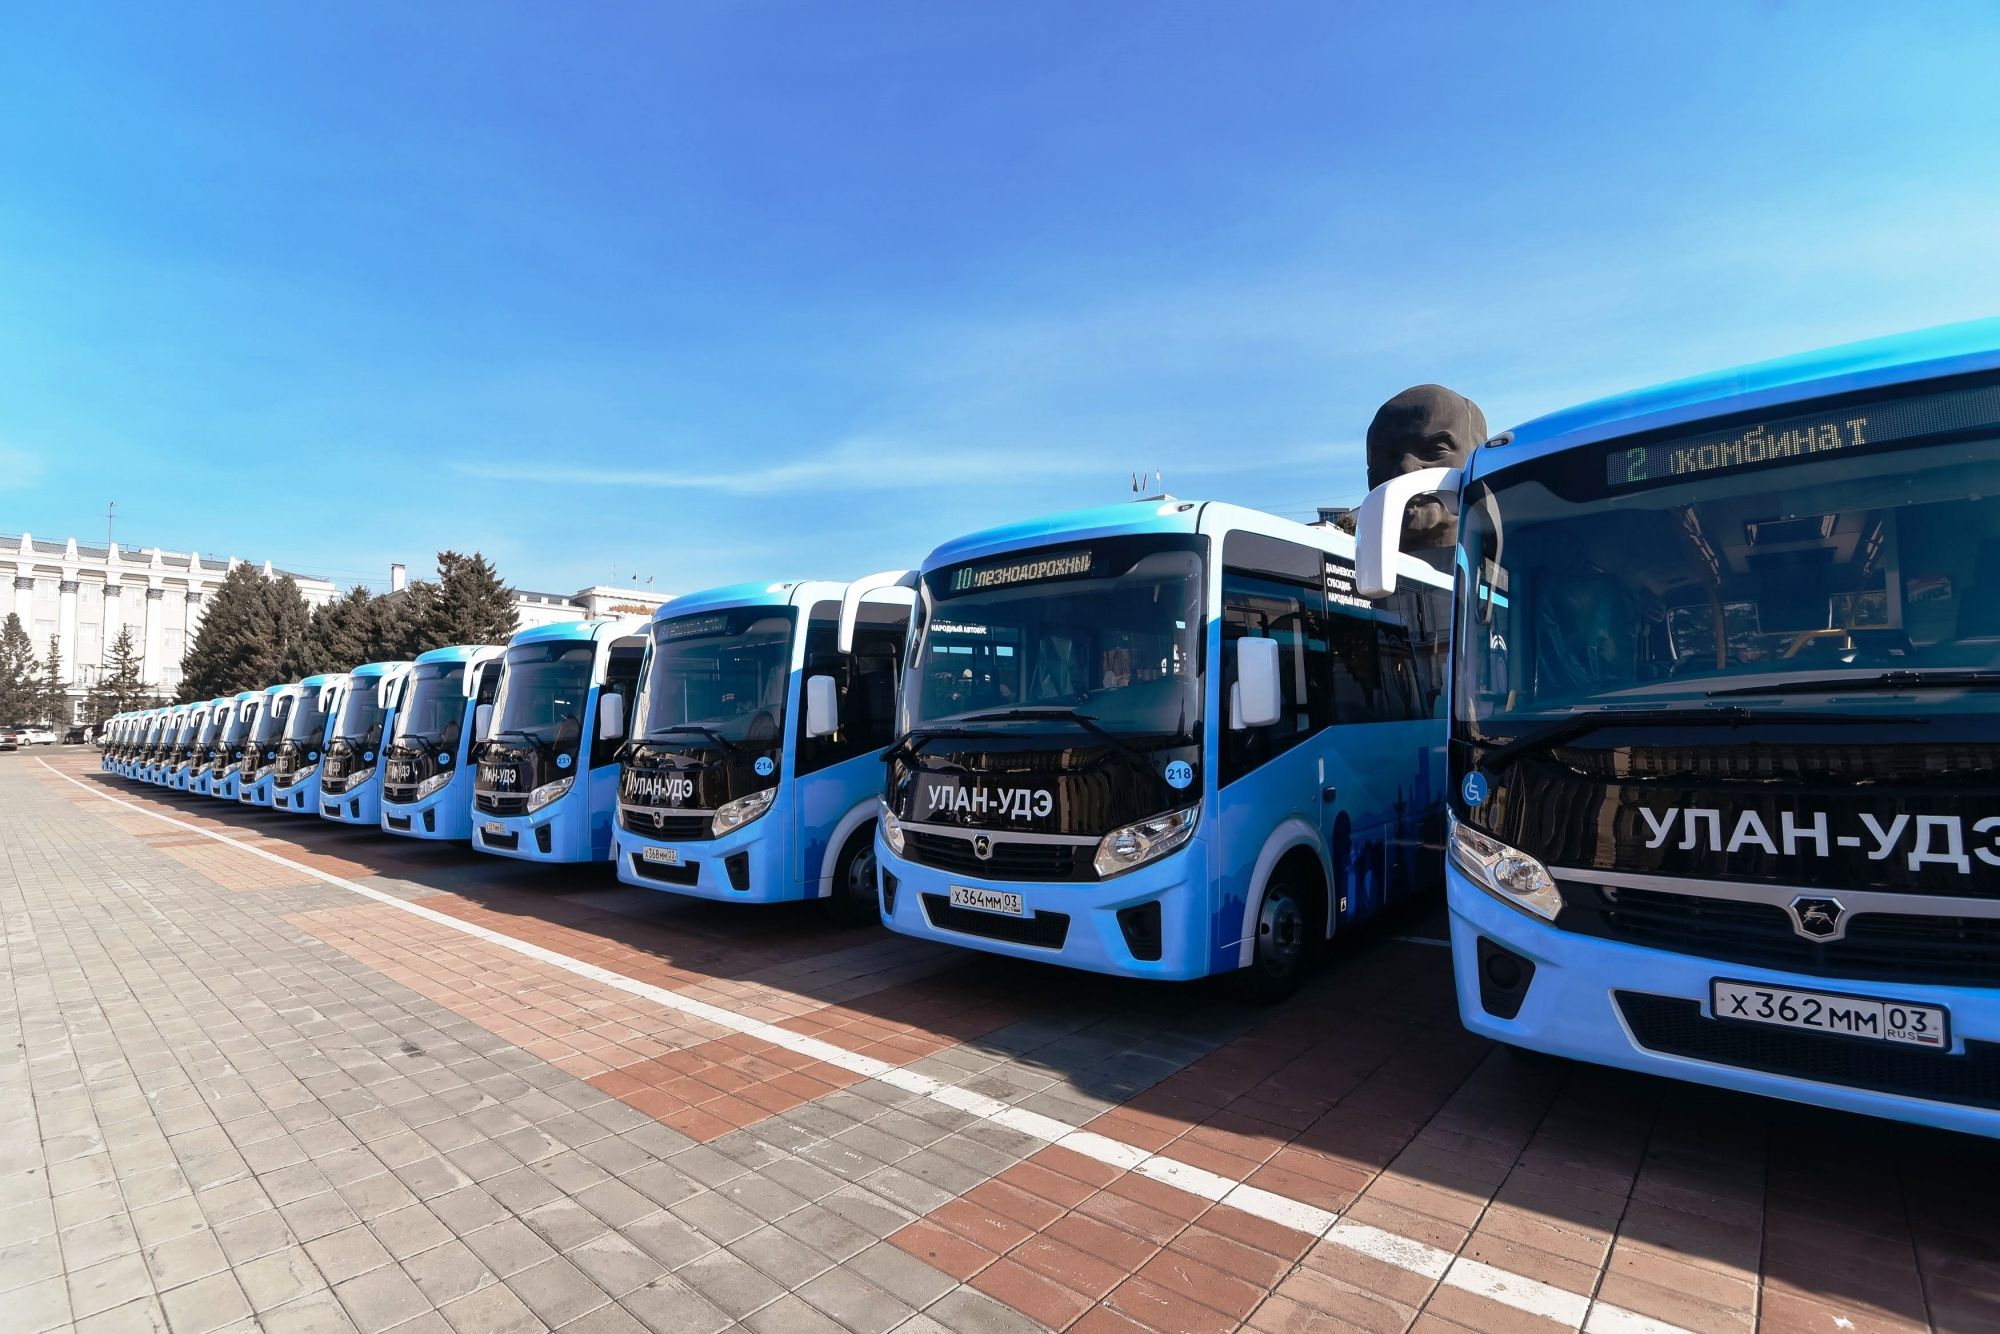 Улан-Удэ получит 300 млн рублей на покупку новых автобусов 